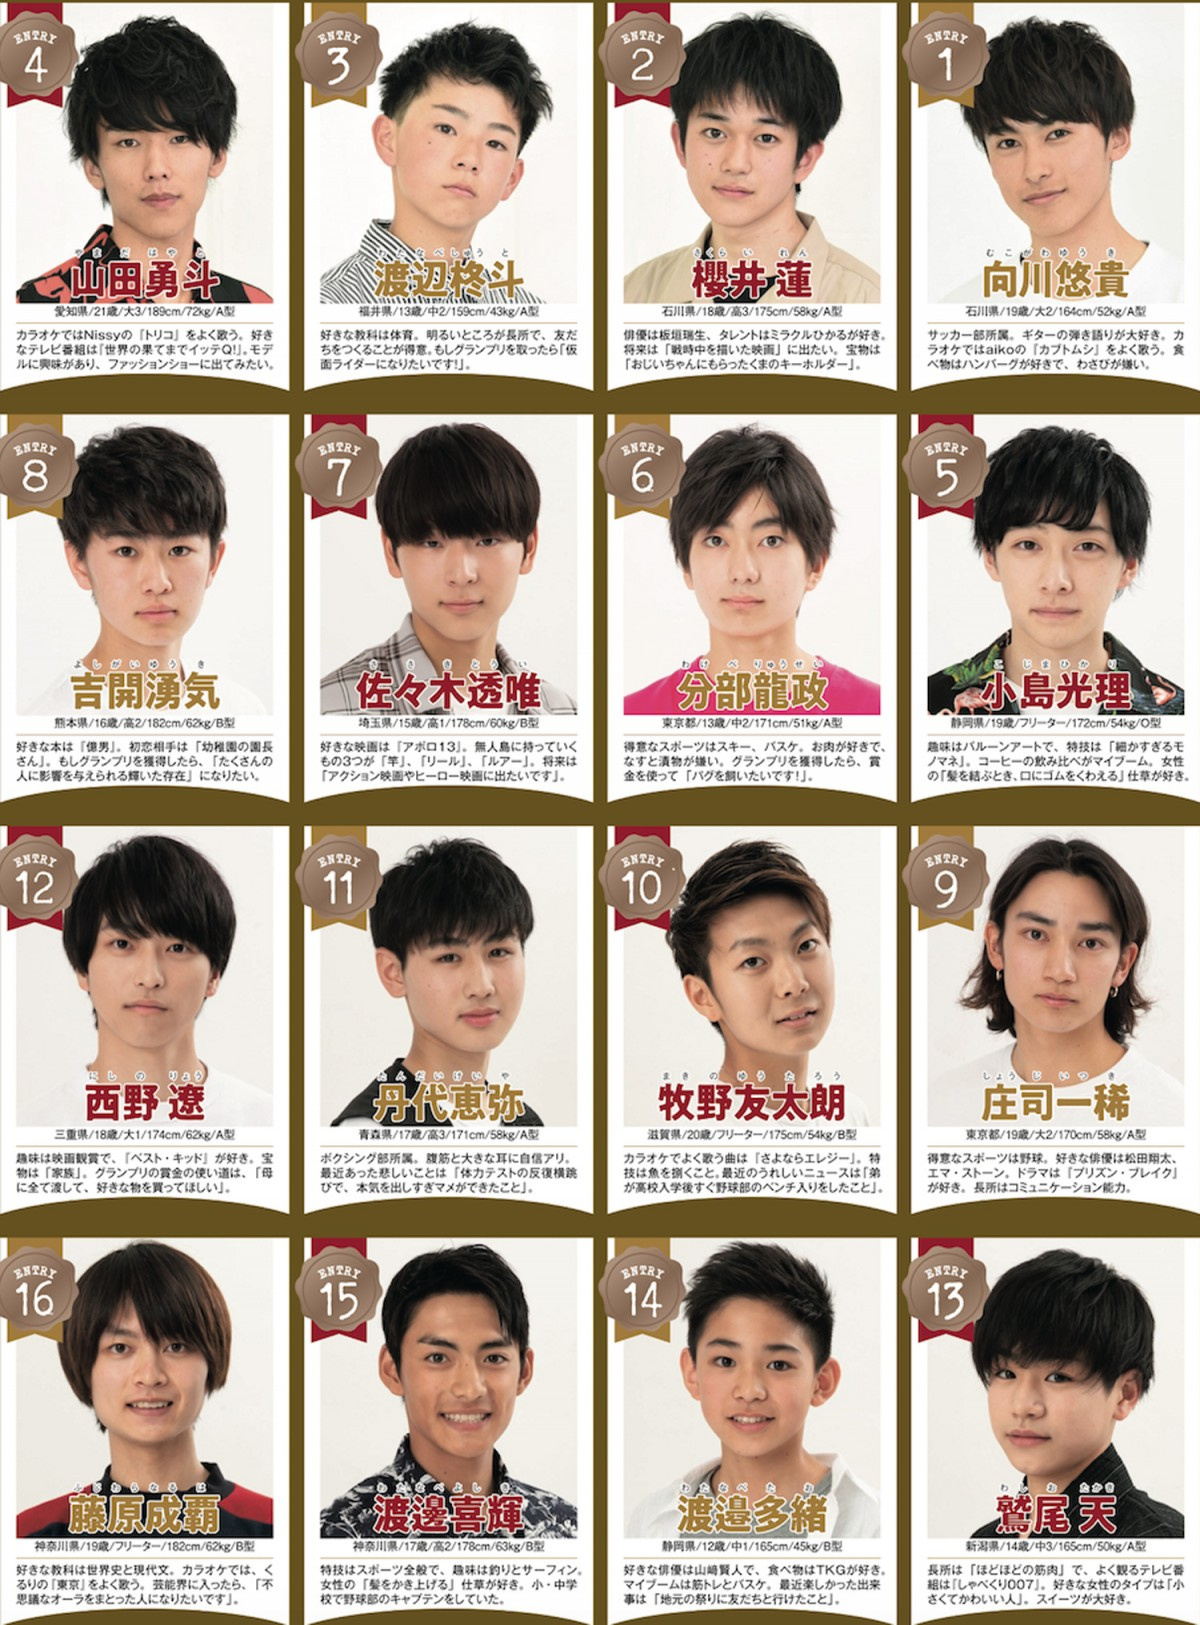 令和初 ジュノンボーイ候補105人が決定 王子様 12歳 高学歴大学生など十人十色 Oricon News